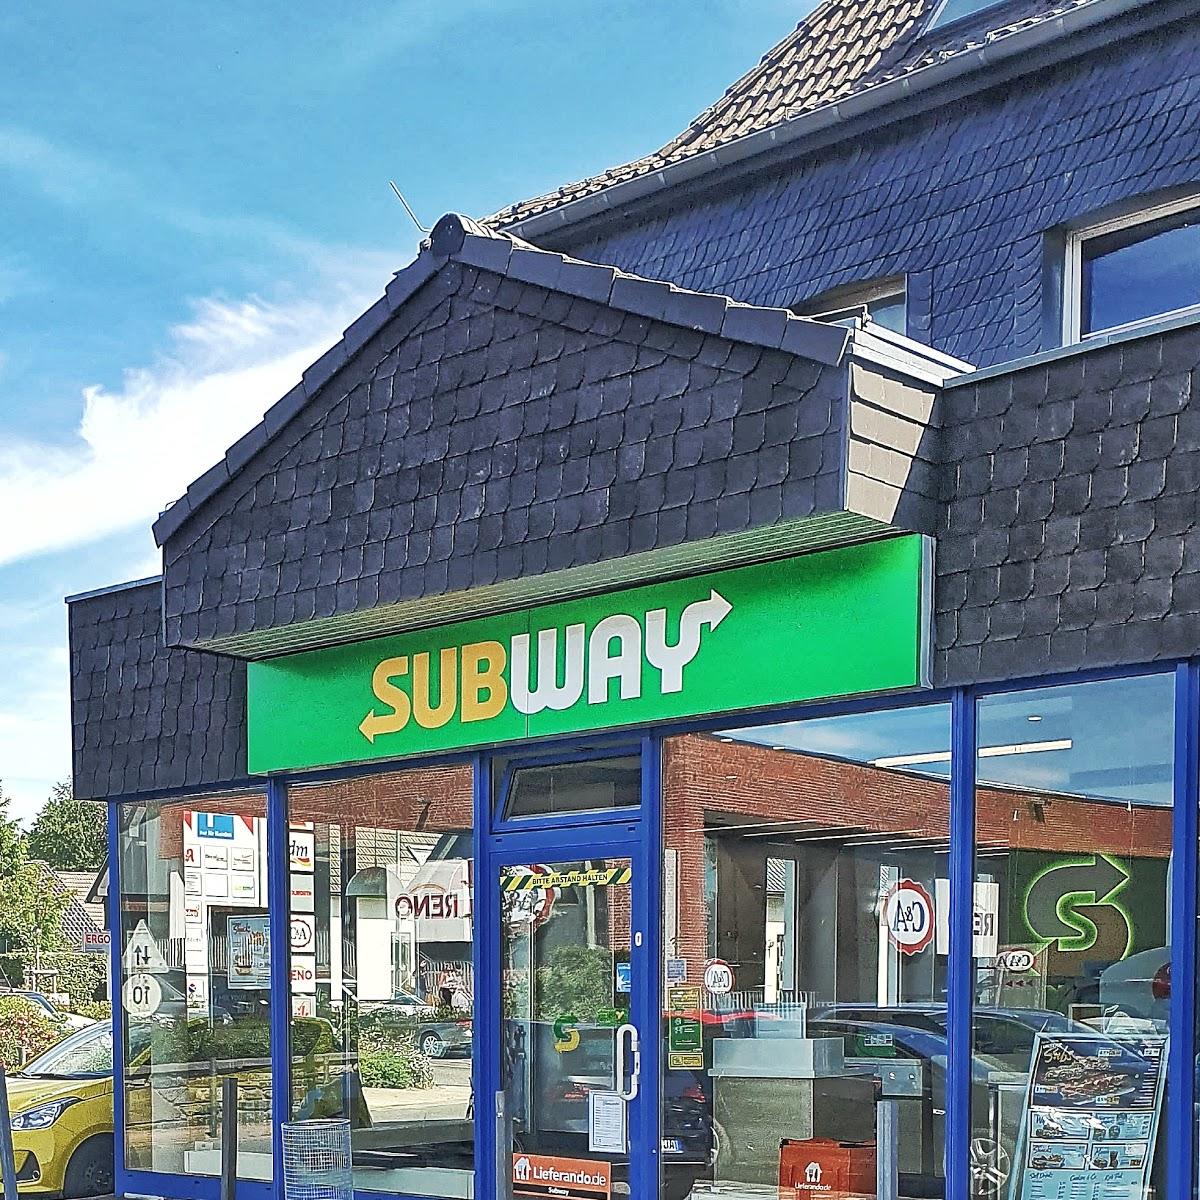 Restaurant "Subway" in Monschau